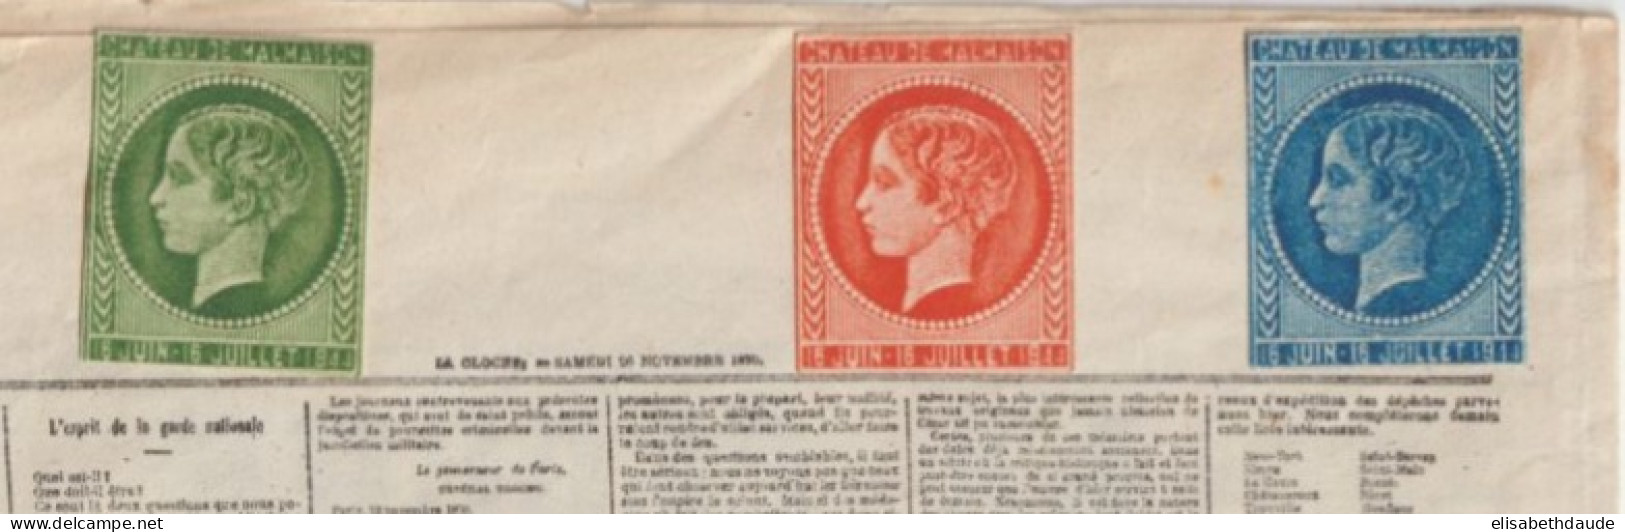 1944 - TIMBRES VIGNETTES EXPO CHATEAU DE MALMAISON "EMISSIONS SECOND EMPIRE" Sur DOCUMENT REPRO "LA CLOCHE" 1870 - Briefmarkenmessen